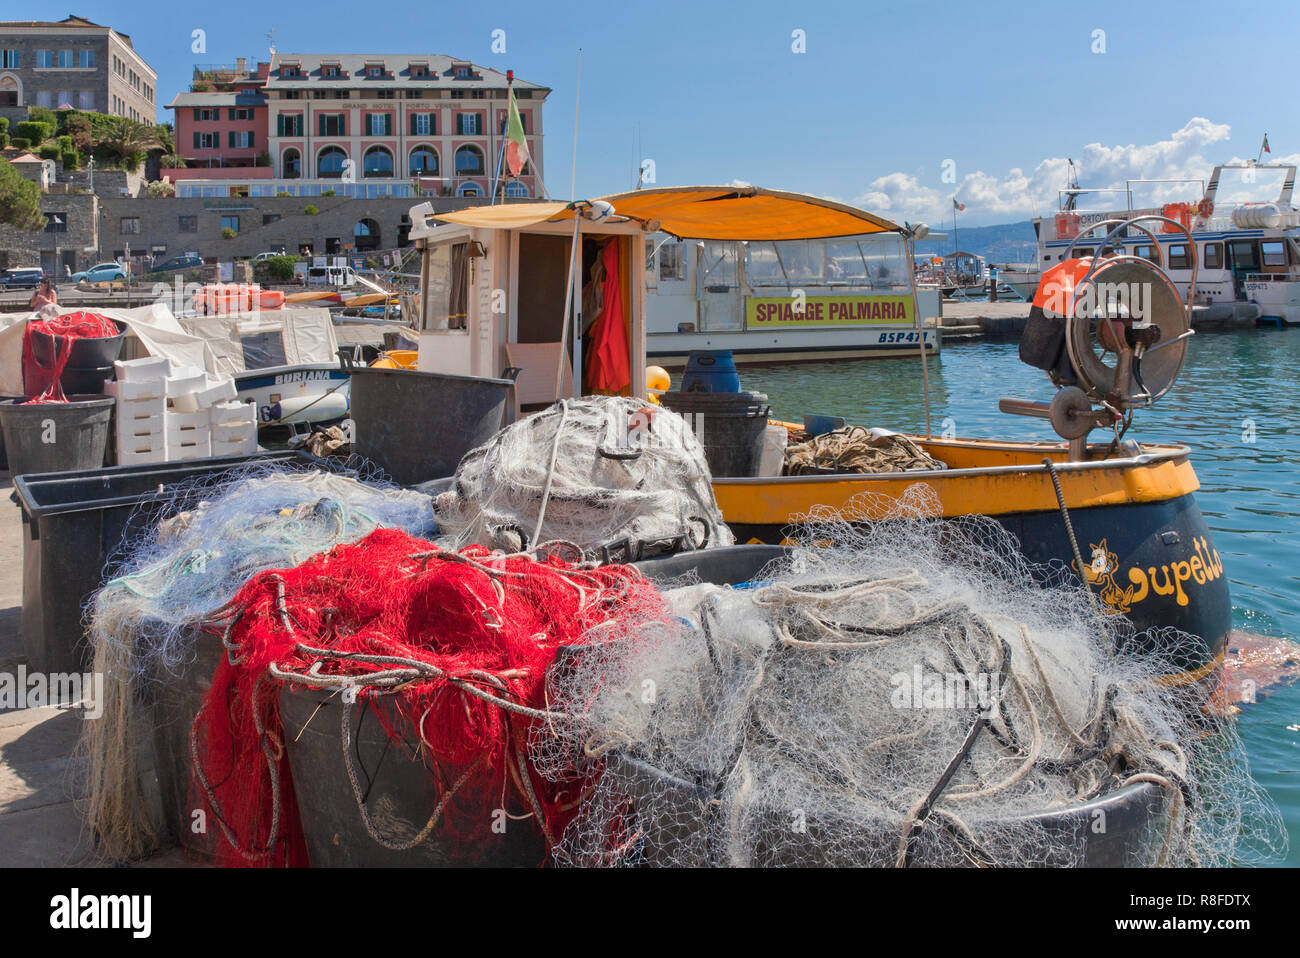 Voile et filets de pêche, via Calata Doria, Portovenere, Italie. Inscrivez-vous sur le bateau en arrière-plan annonce voyages à l'île des plages de Palmeria. Banque D'Images